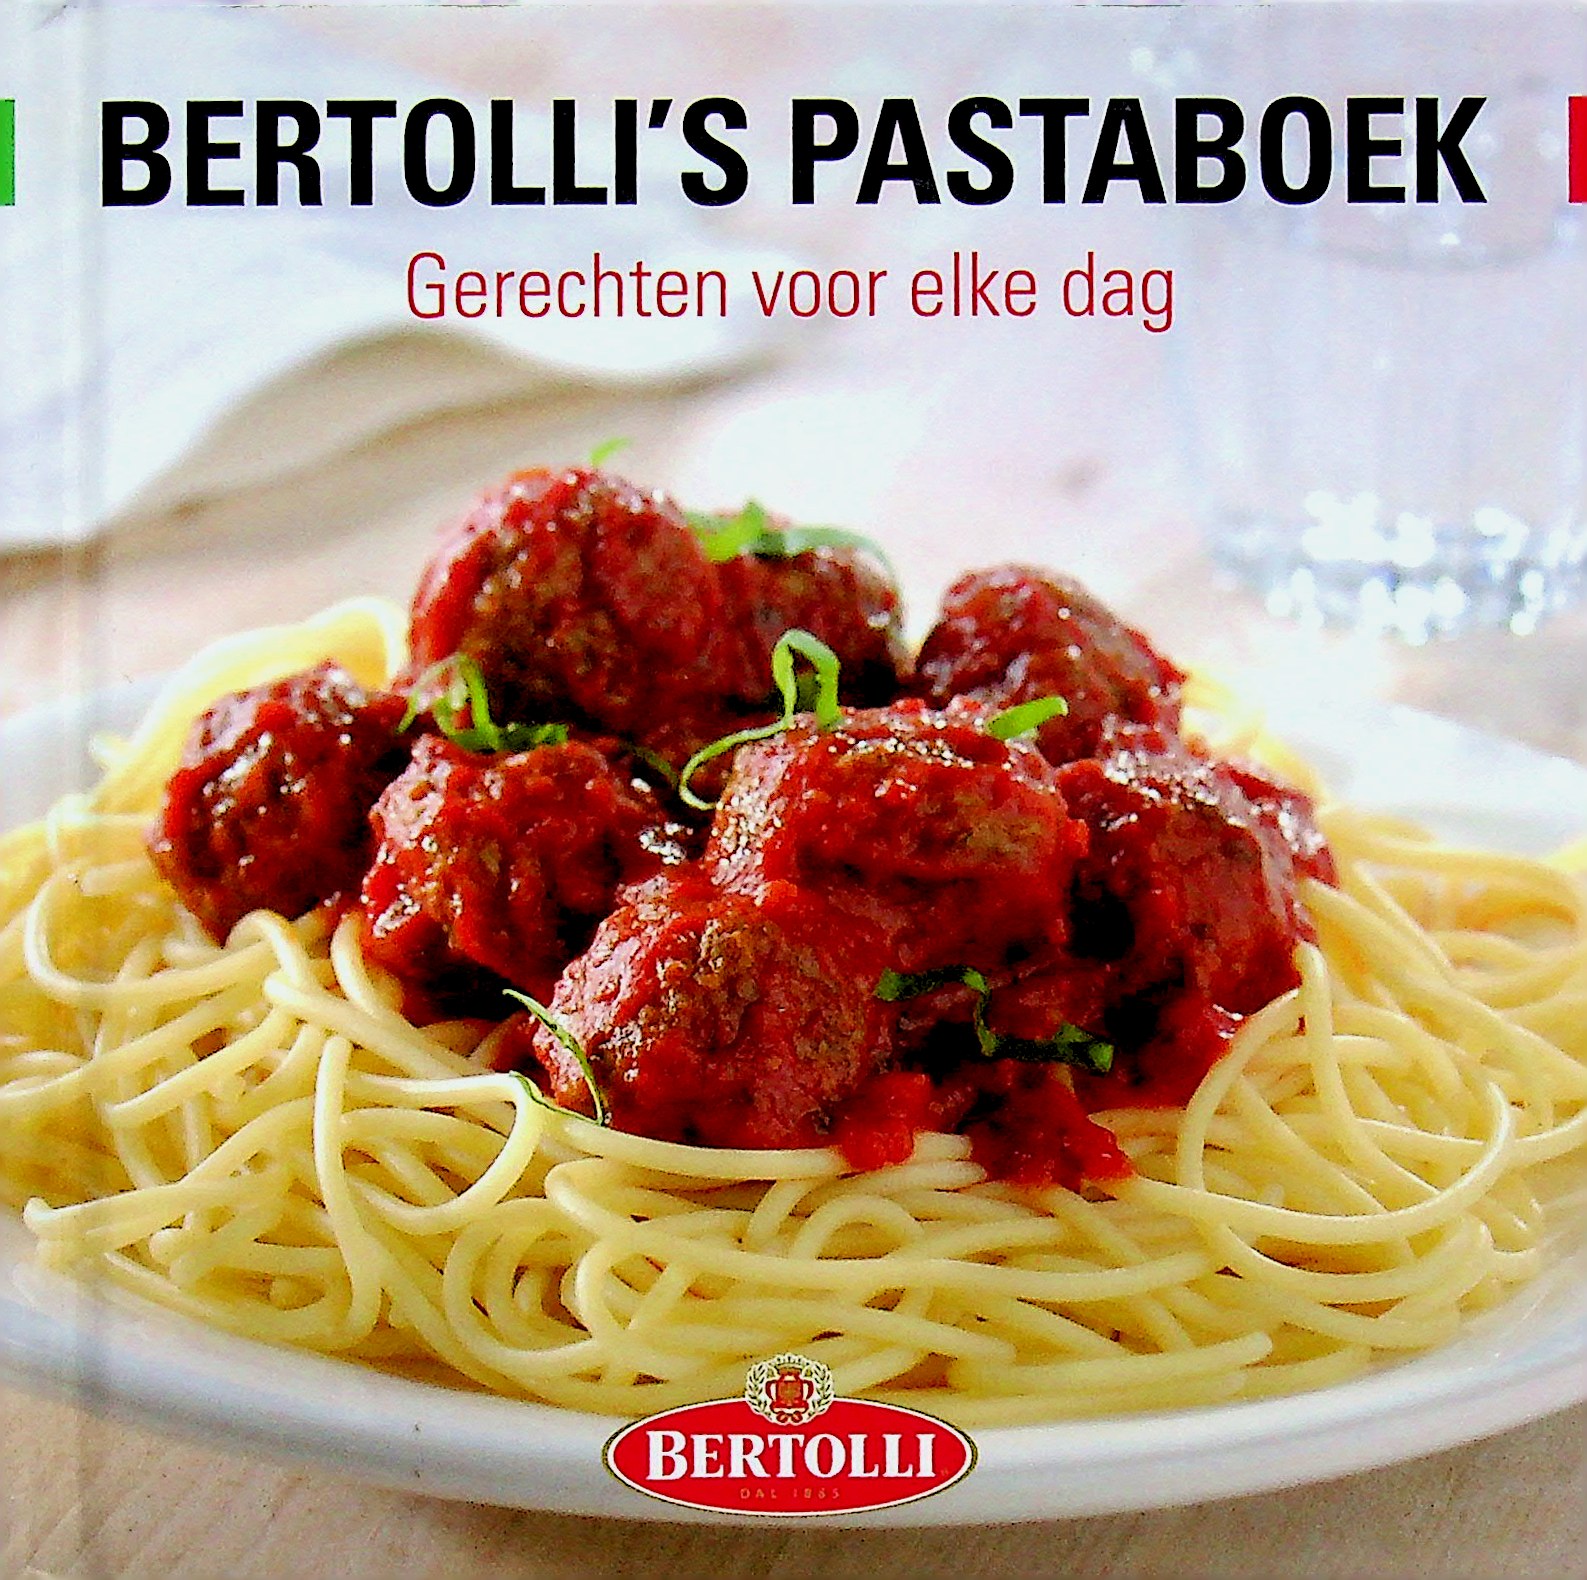 Bertolli's pastaboek - bertolli